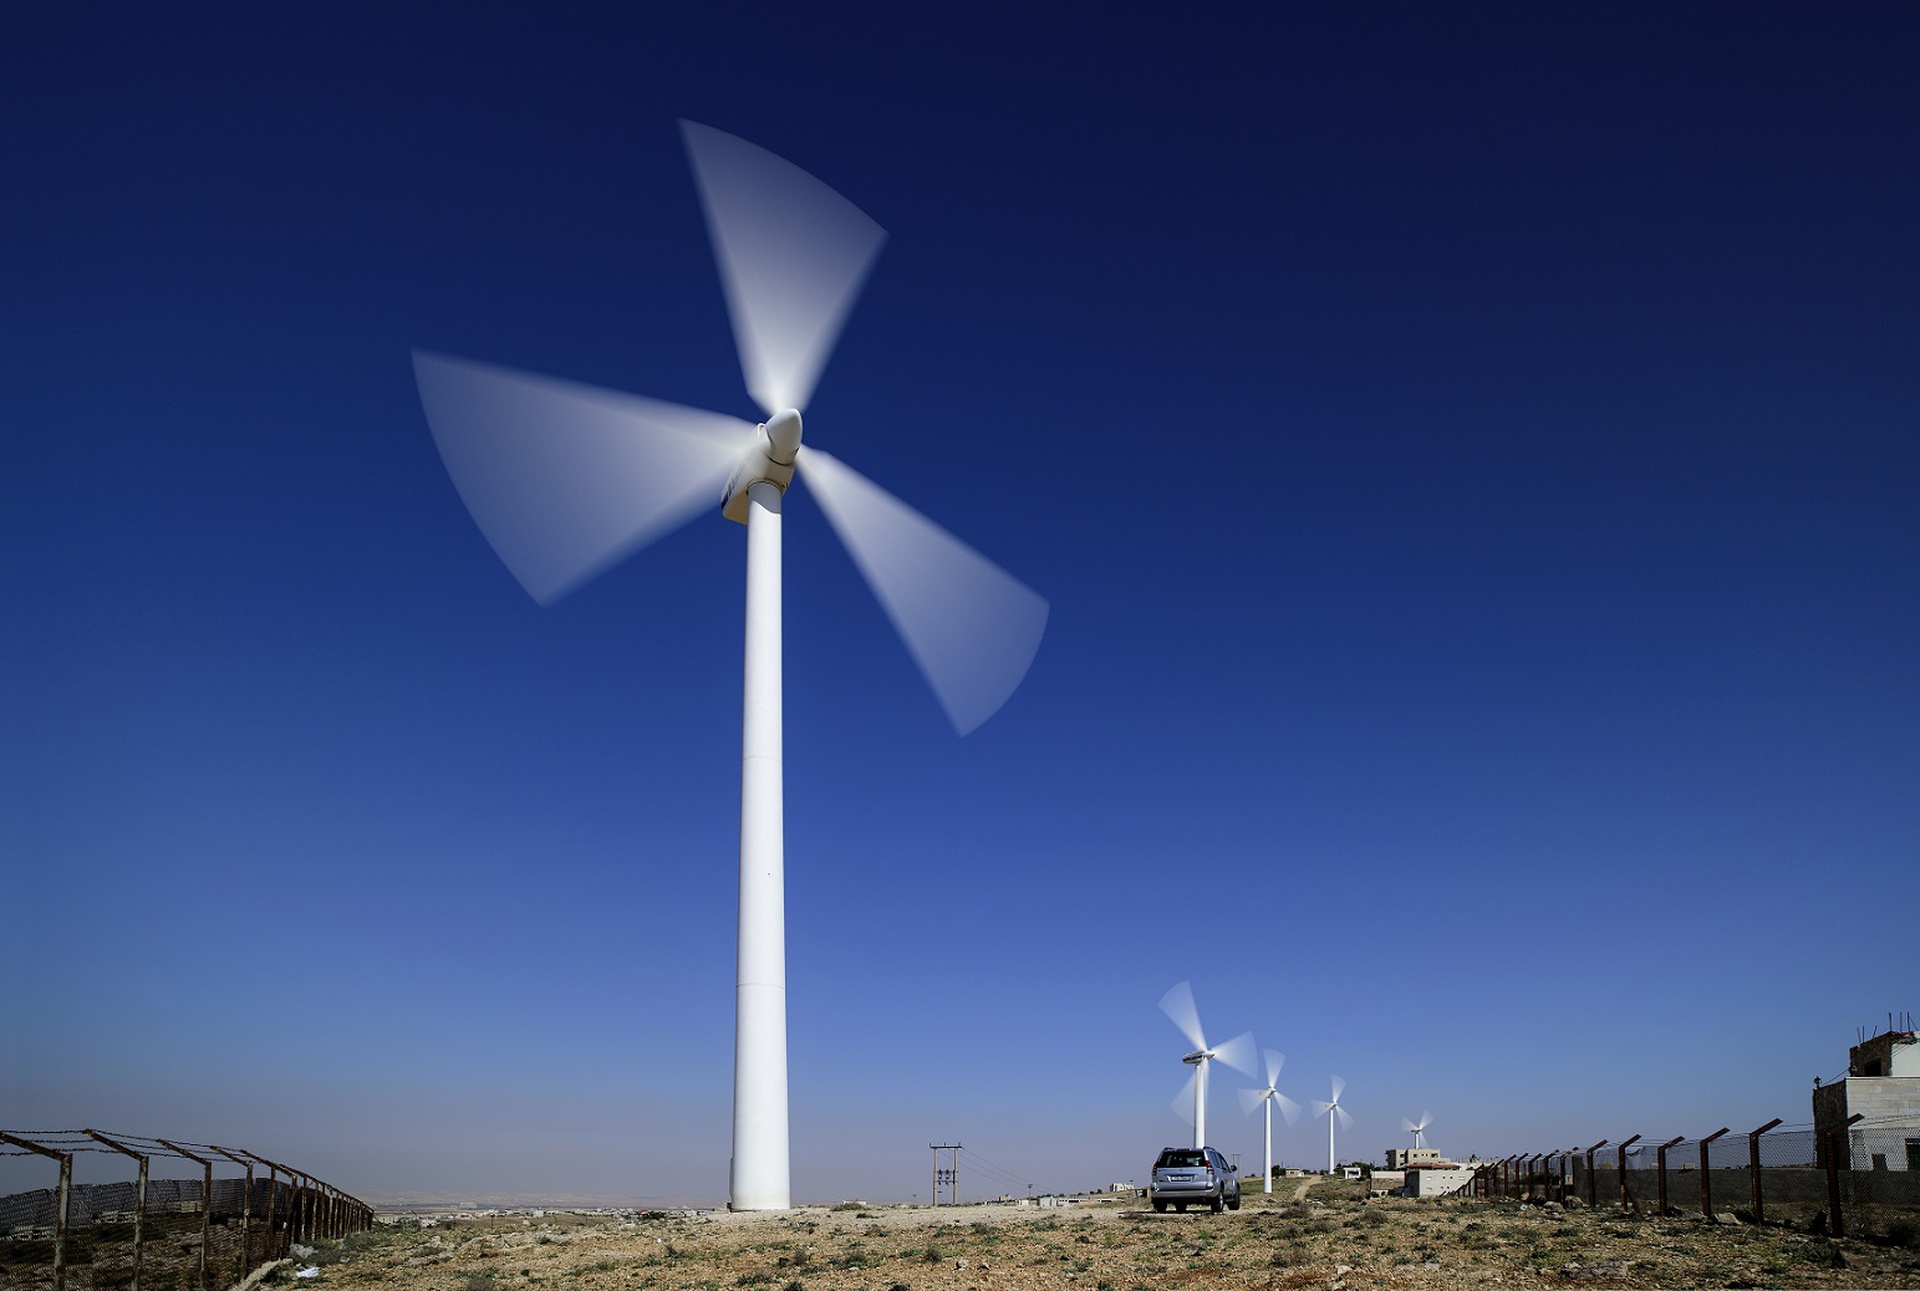 المغرب يستثمر 1.6 مليار دولار لتوليد الطاقة من الرياح